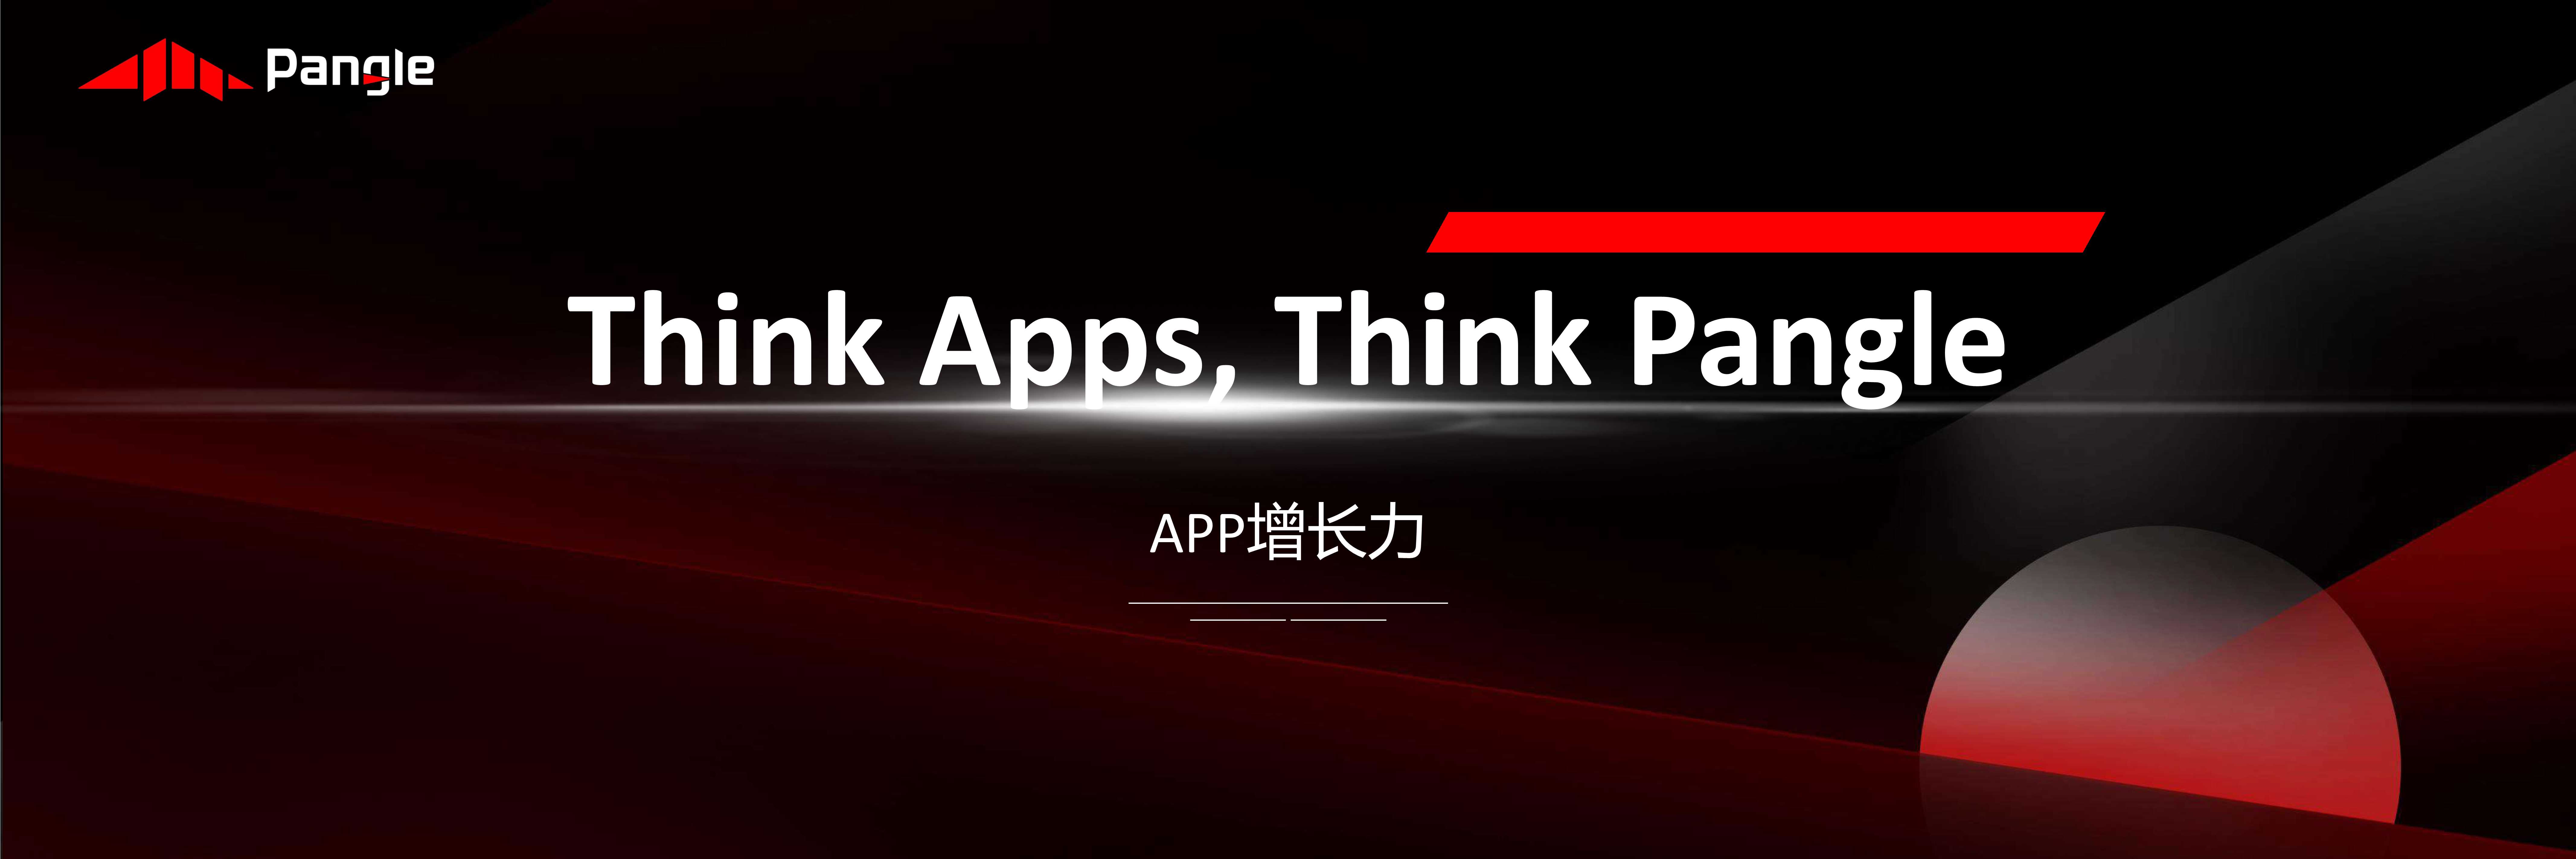 王放-Think Apps, Think Pangle-2021.07-24页